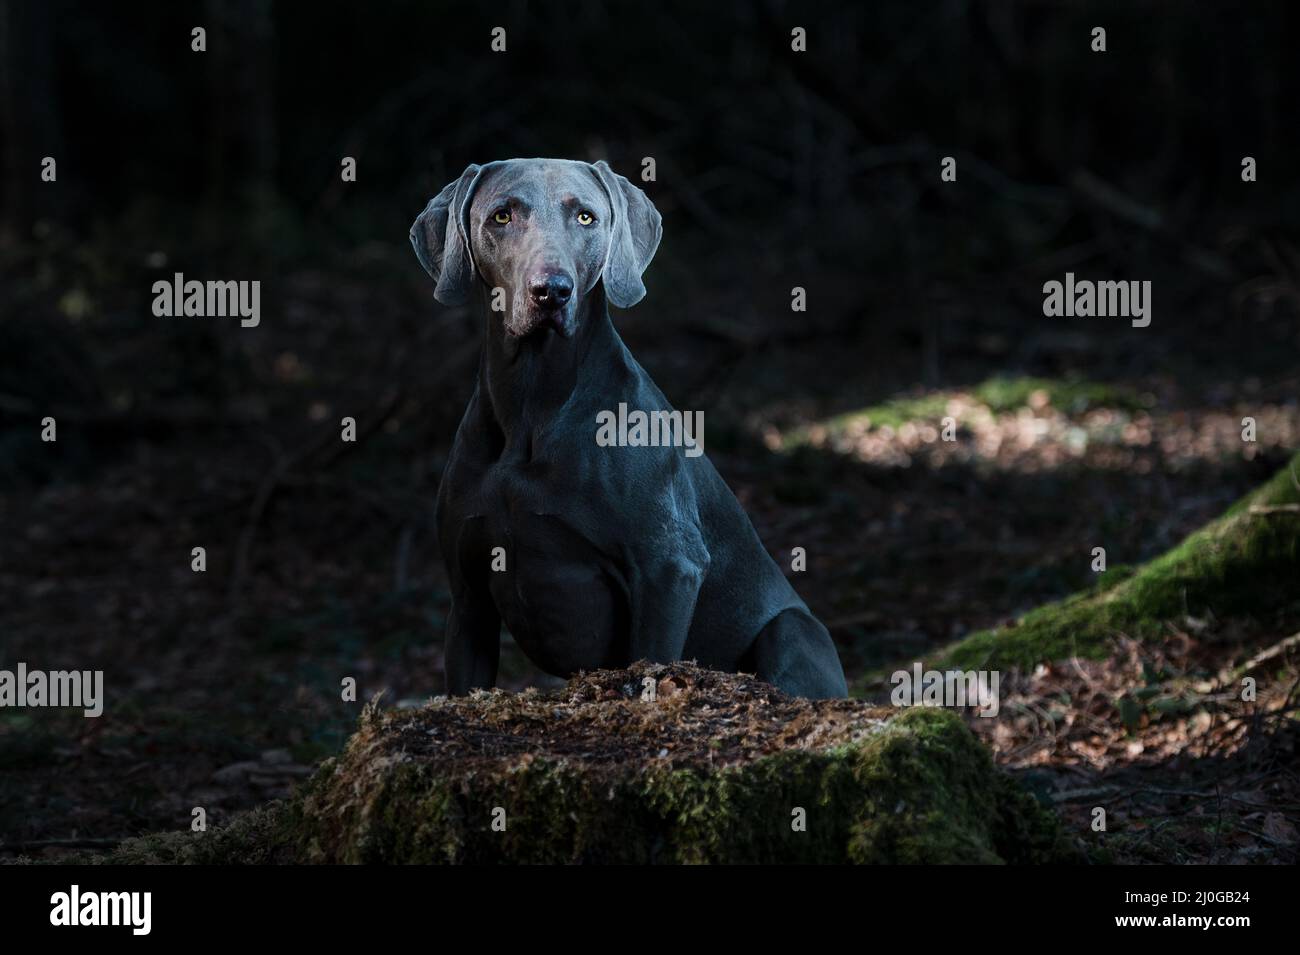 Dog in dark forest Stock Photo